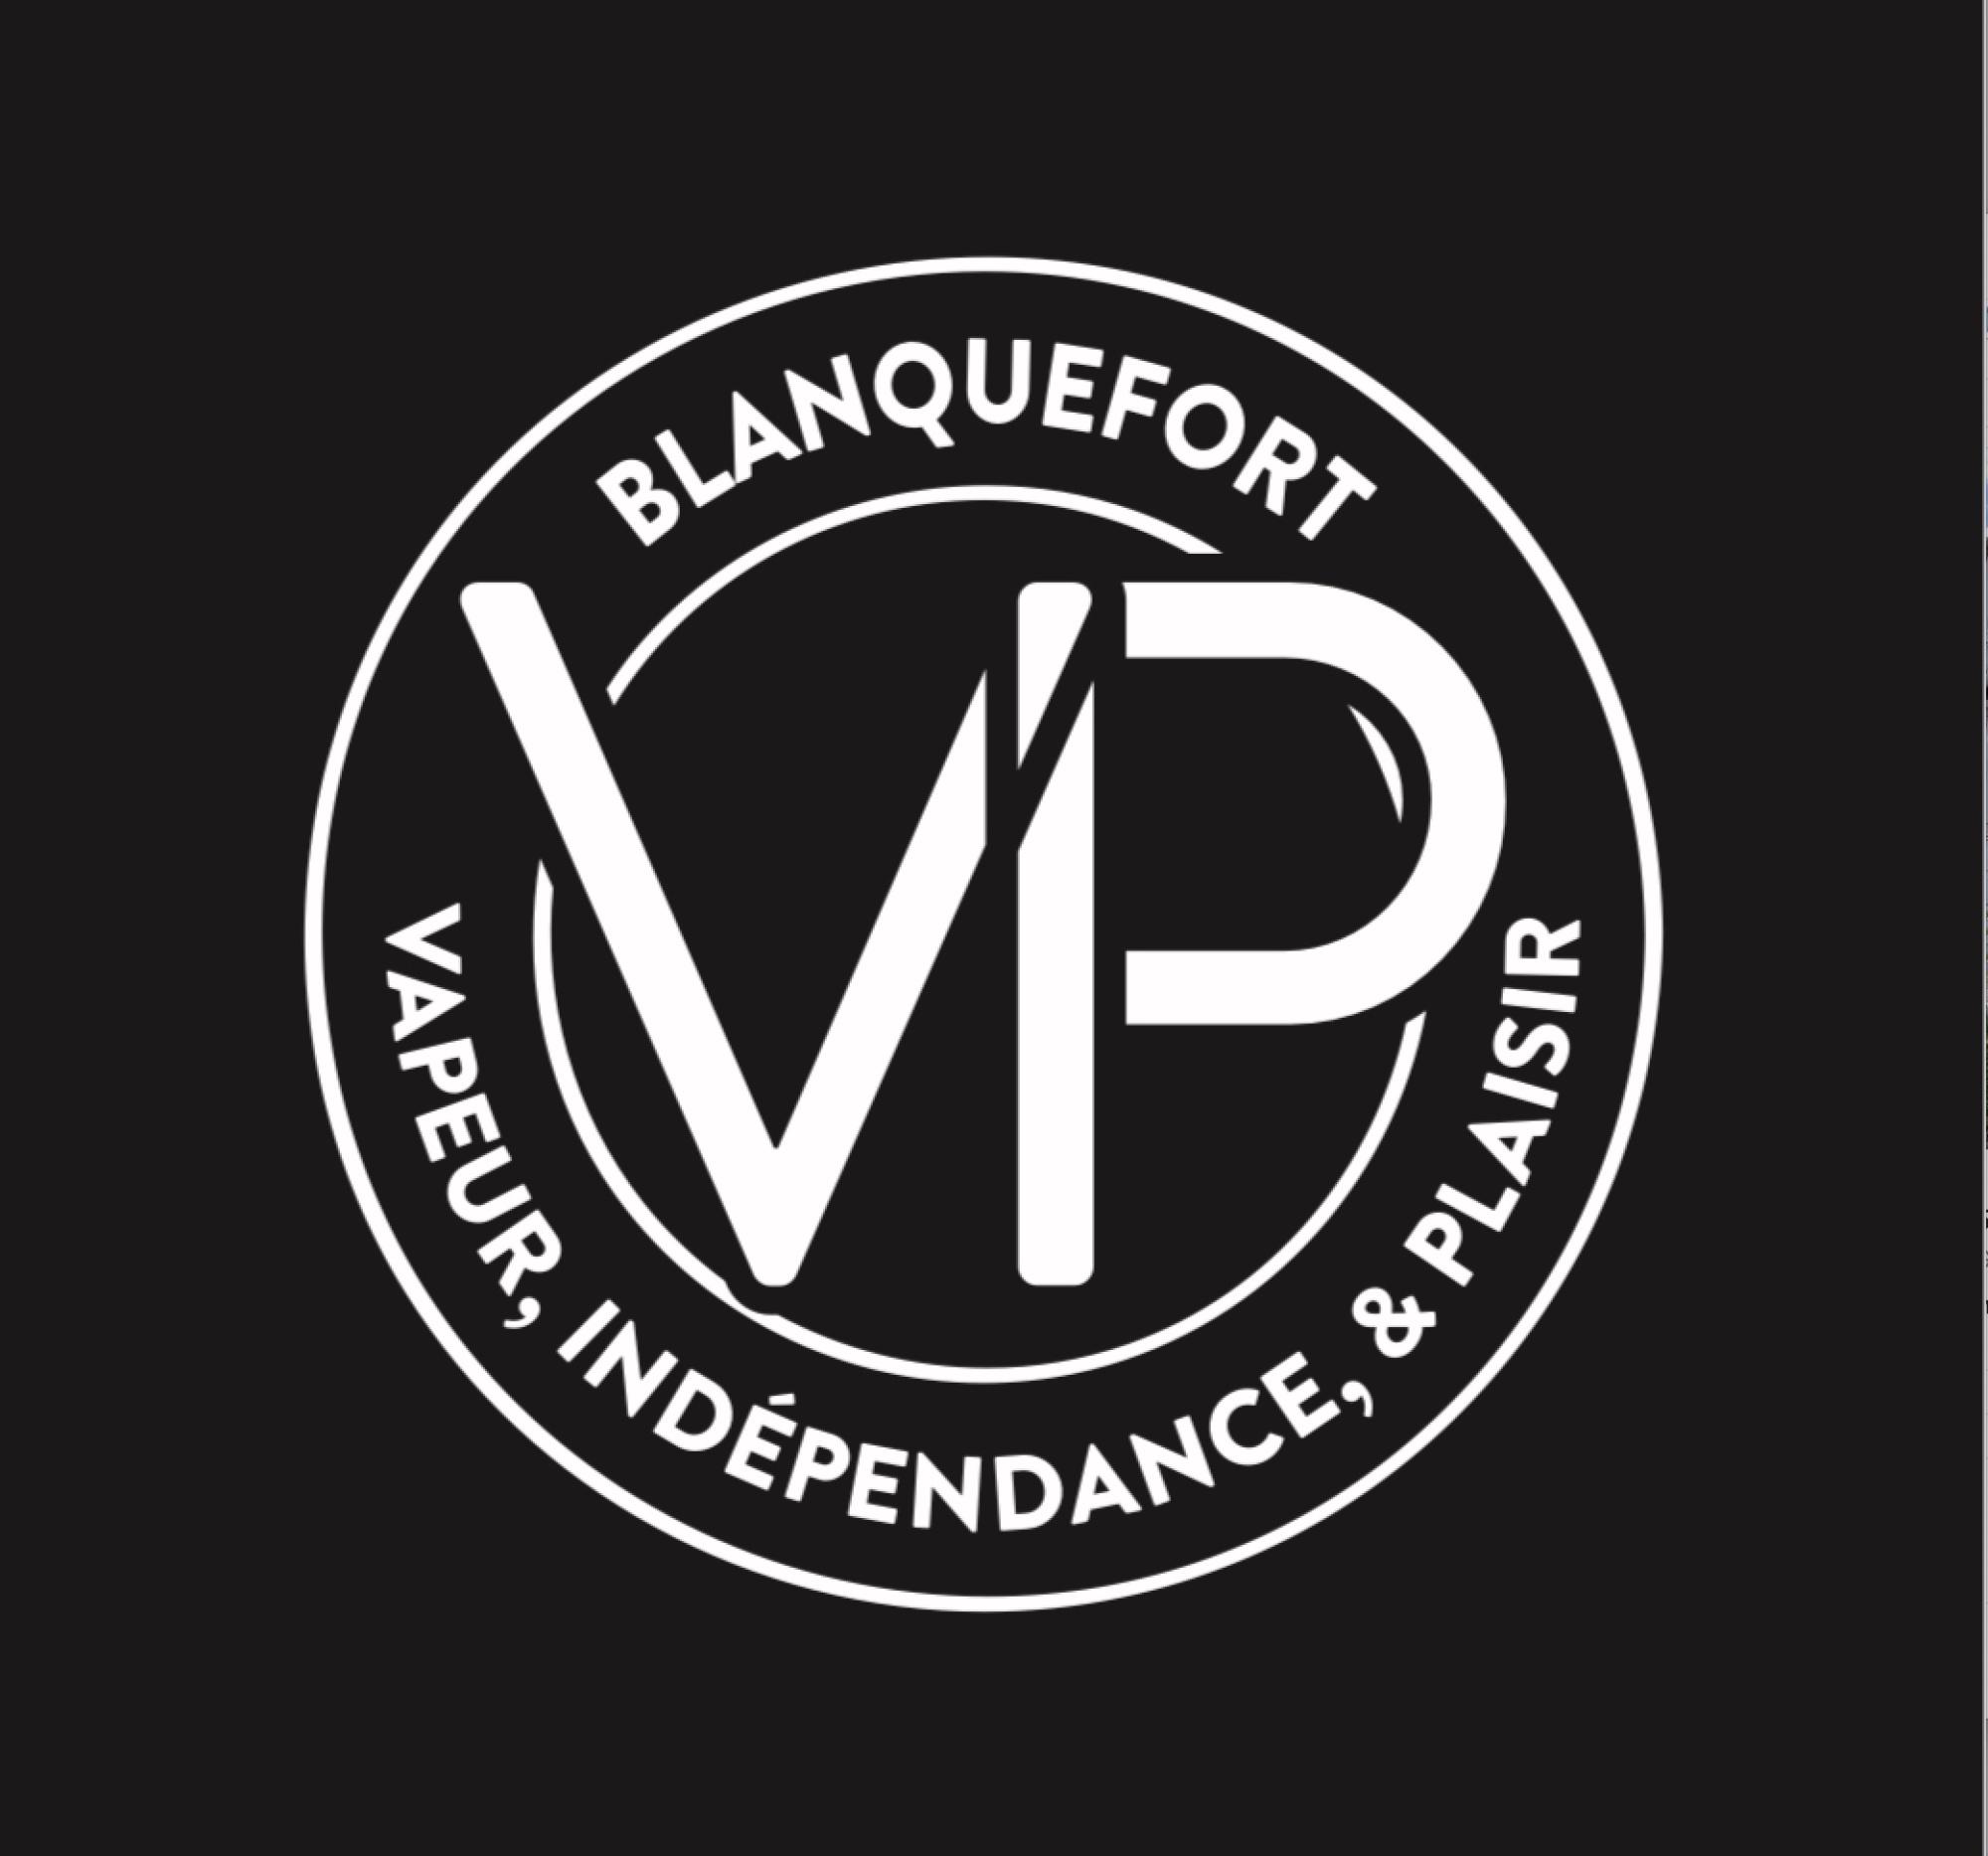 Vapeur, Indépendance, Plaisir - Cigarette électronique Blanquefort Blanquefort